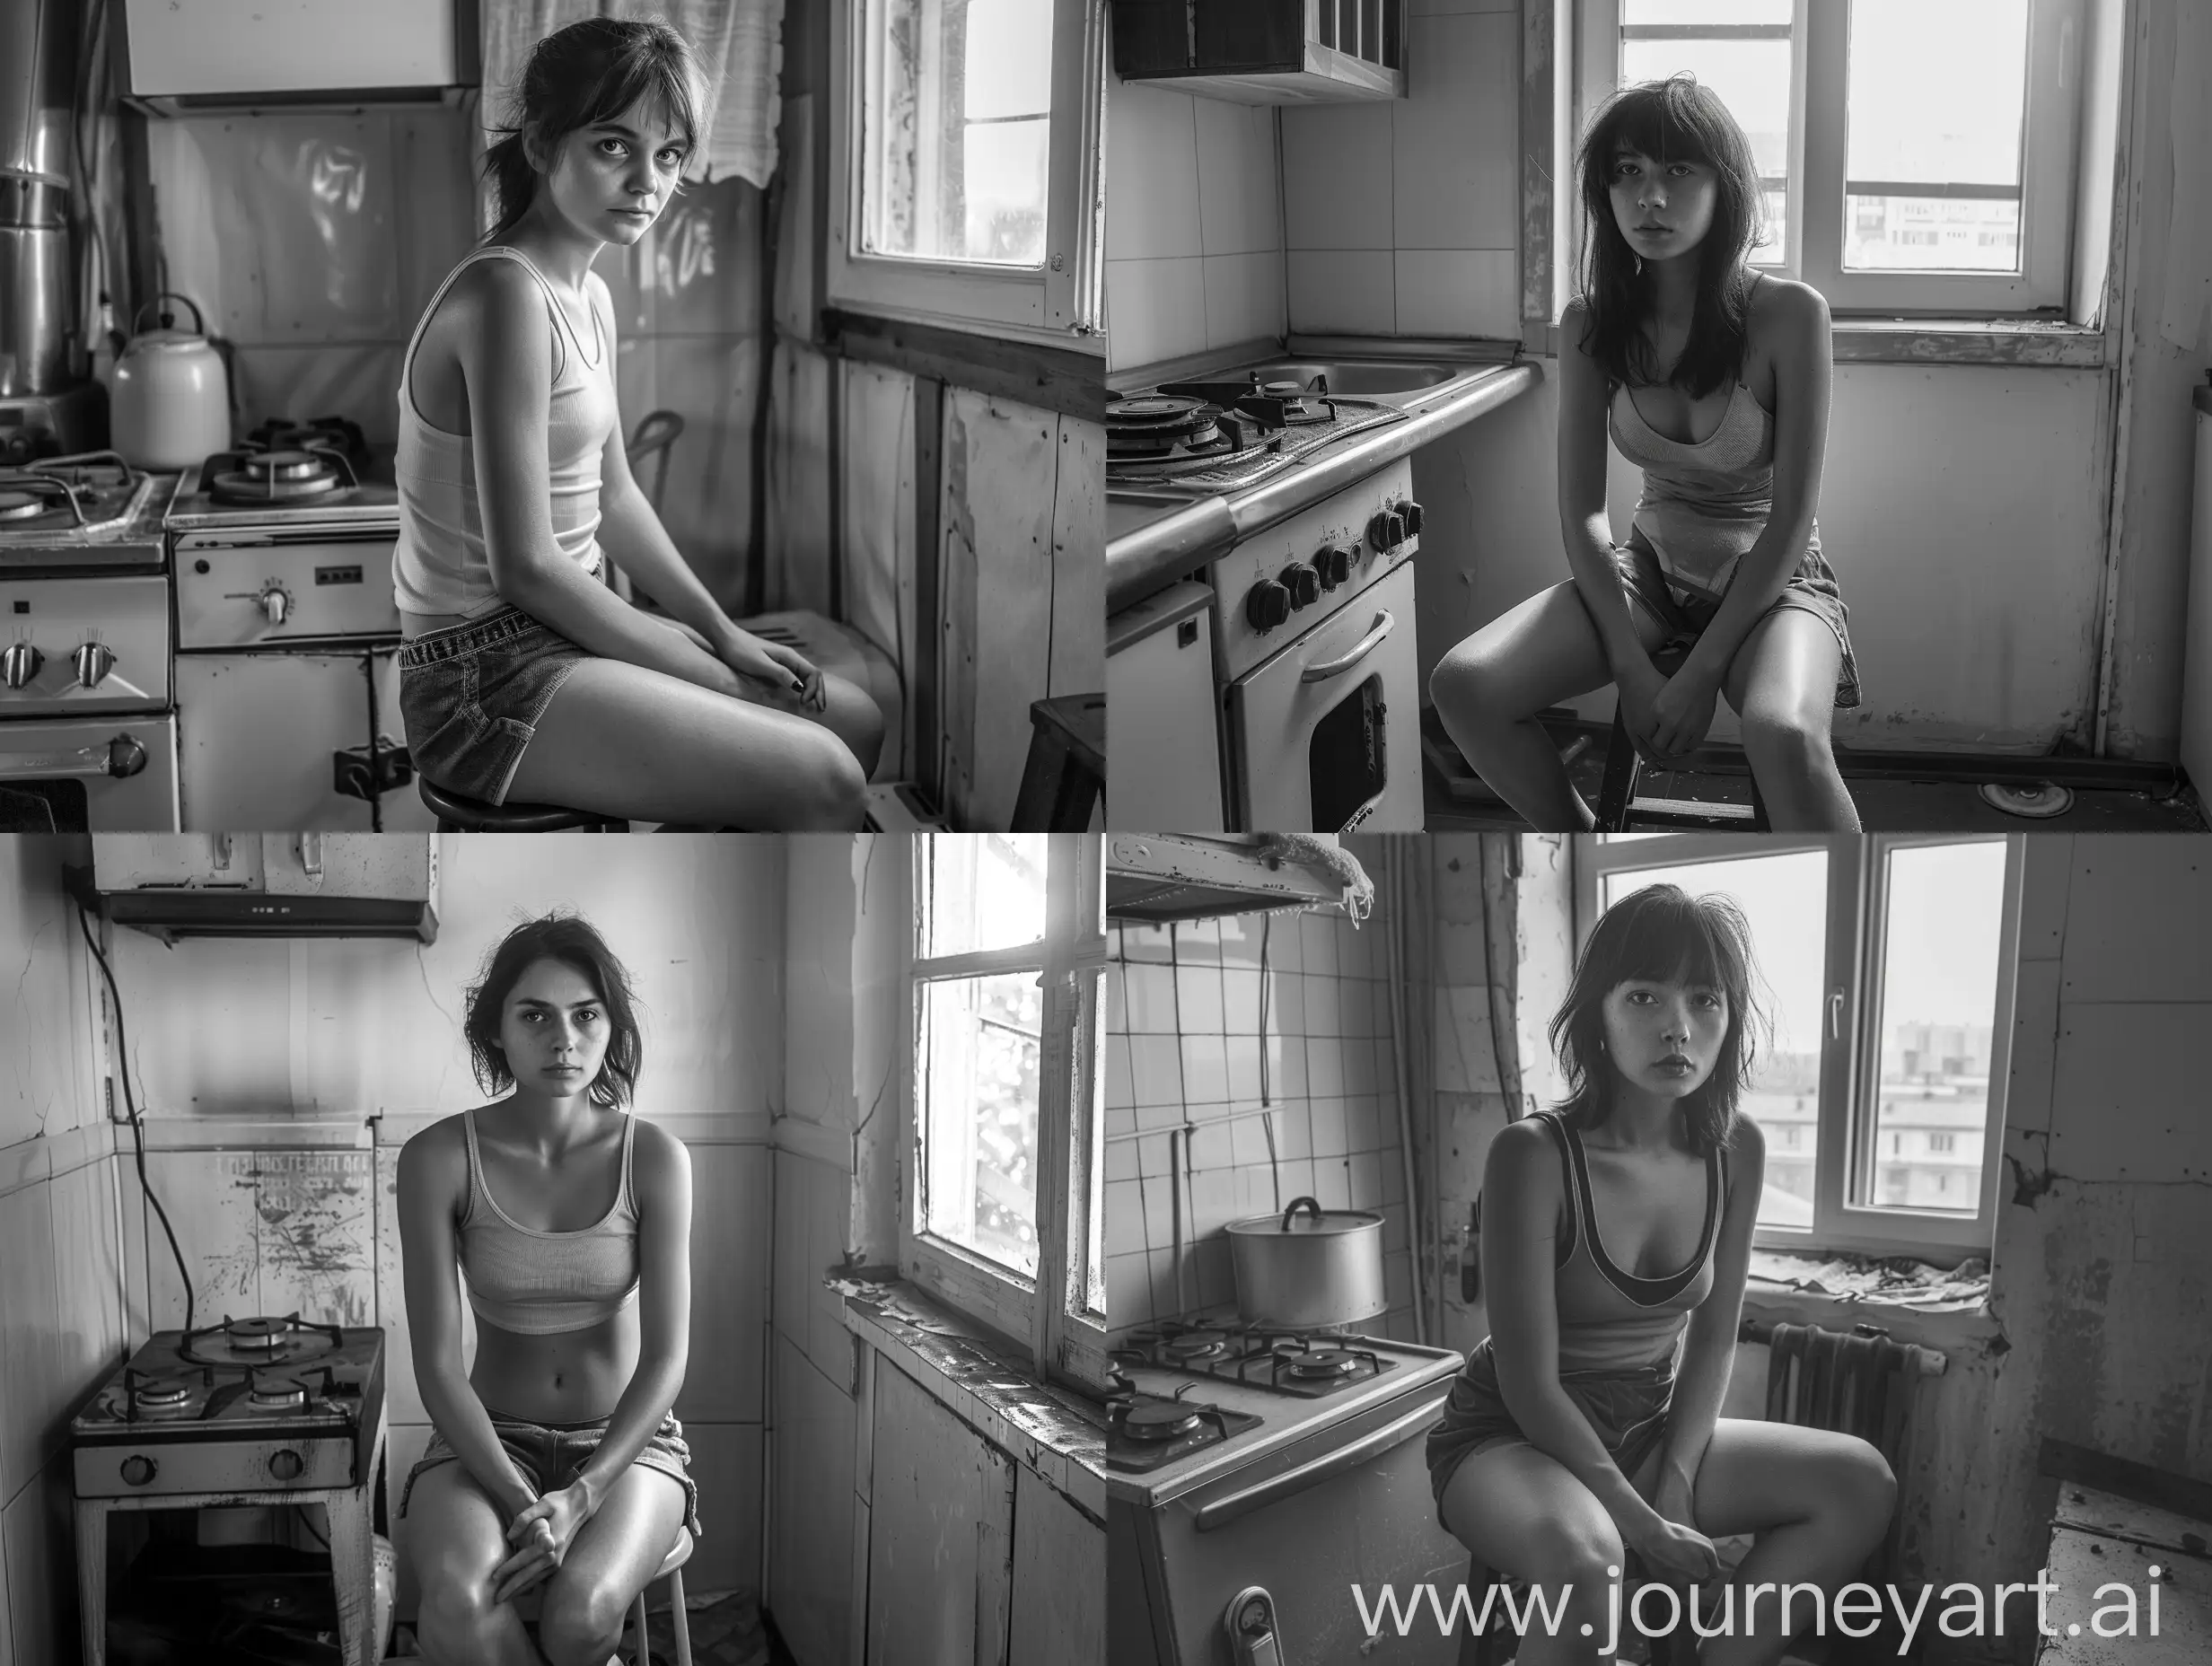 Девочка в майке и шортах сидит лицом к зрителю на табурете в маленькой советской кухне, слева от неё газовая плита, справа - окно. Выражение лица задумчивое с лёгкой улыбкой. Смотрит в камеру. Фотография высокого качества, 4K.